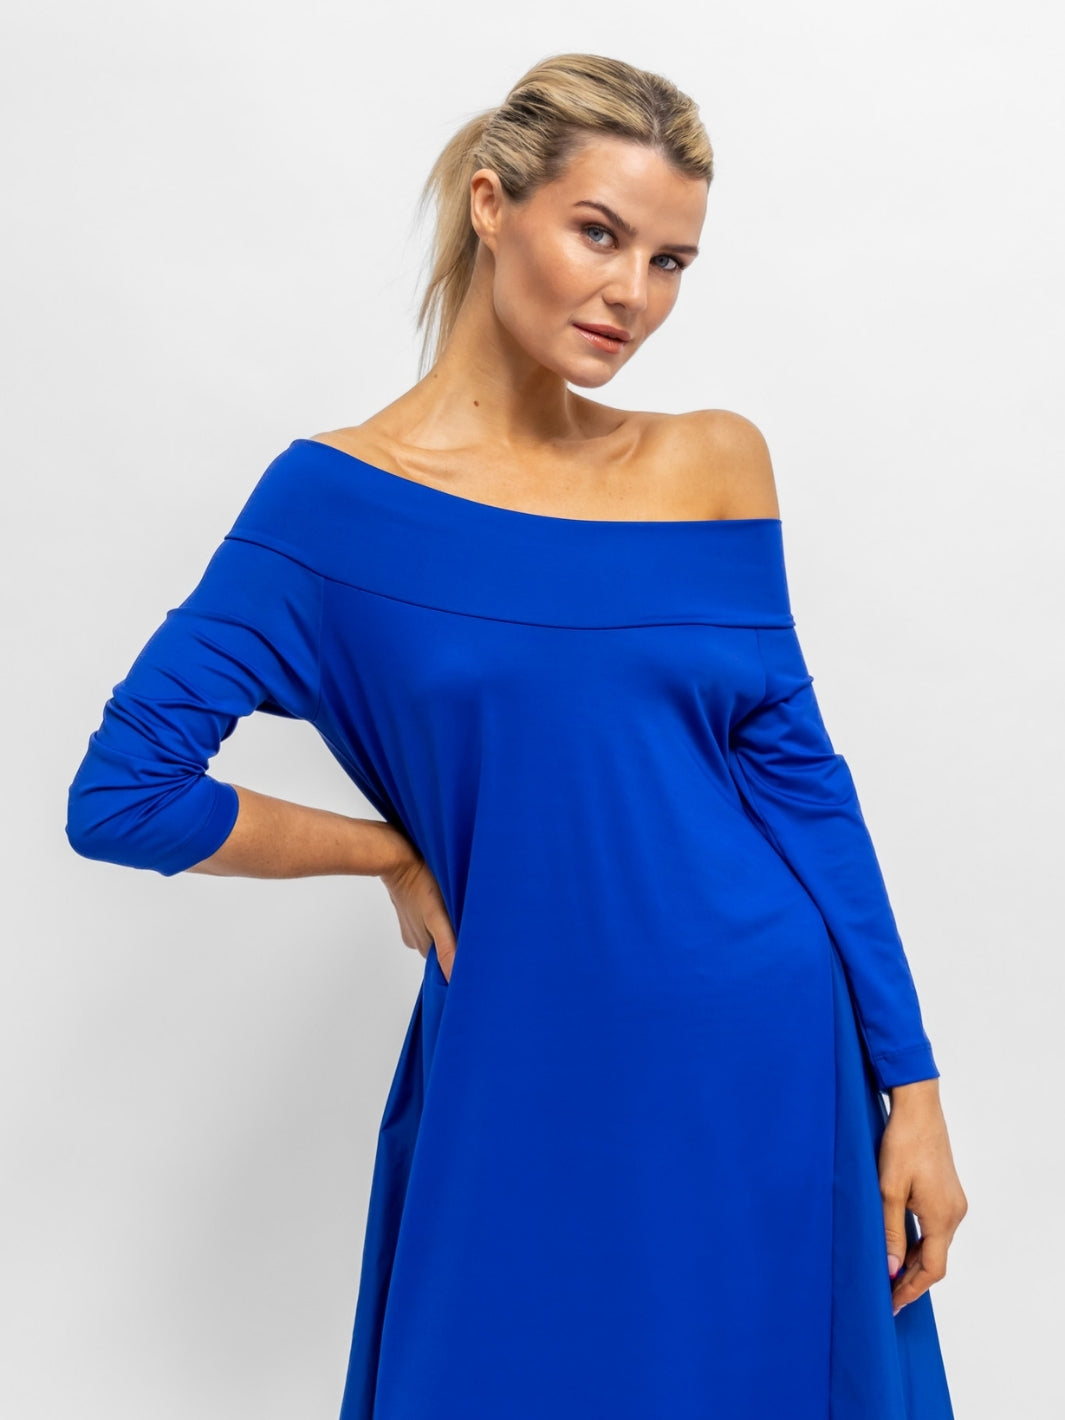 Xenia Design Dress Xenia TOTO Dress in Electric Blue